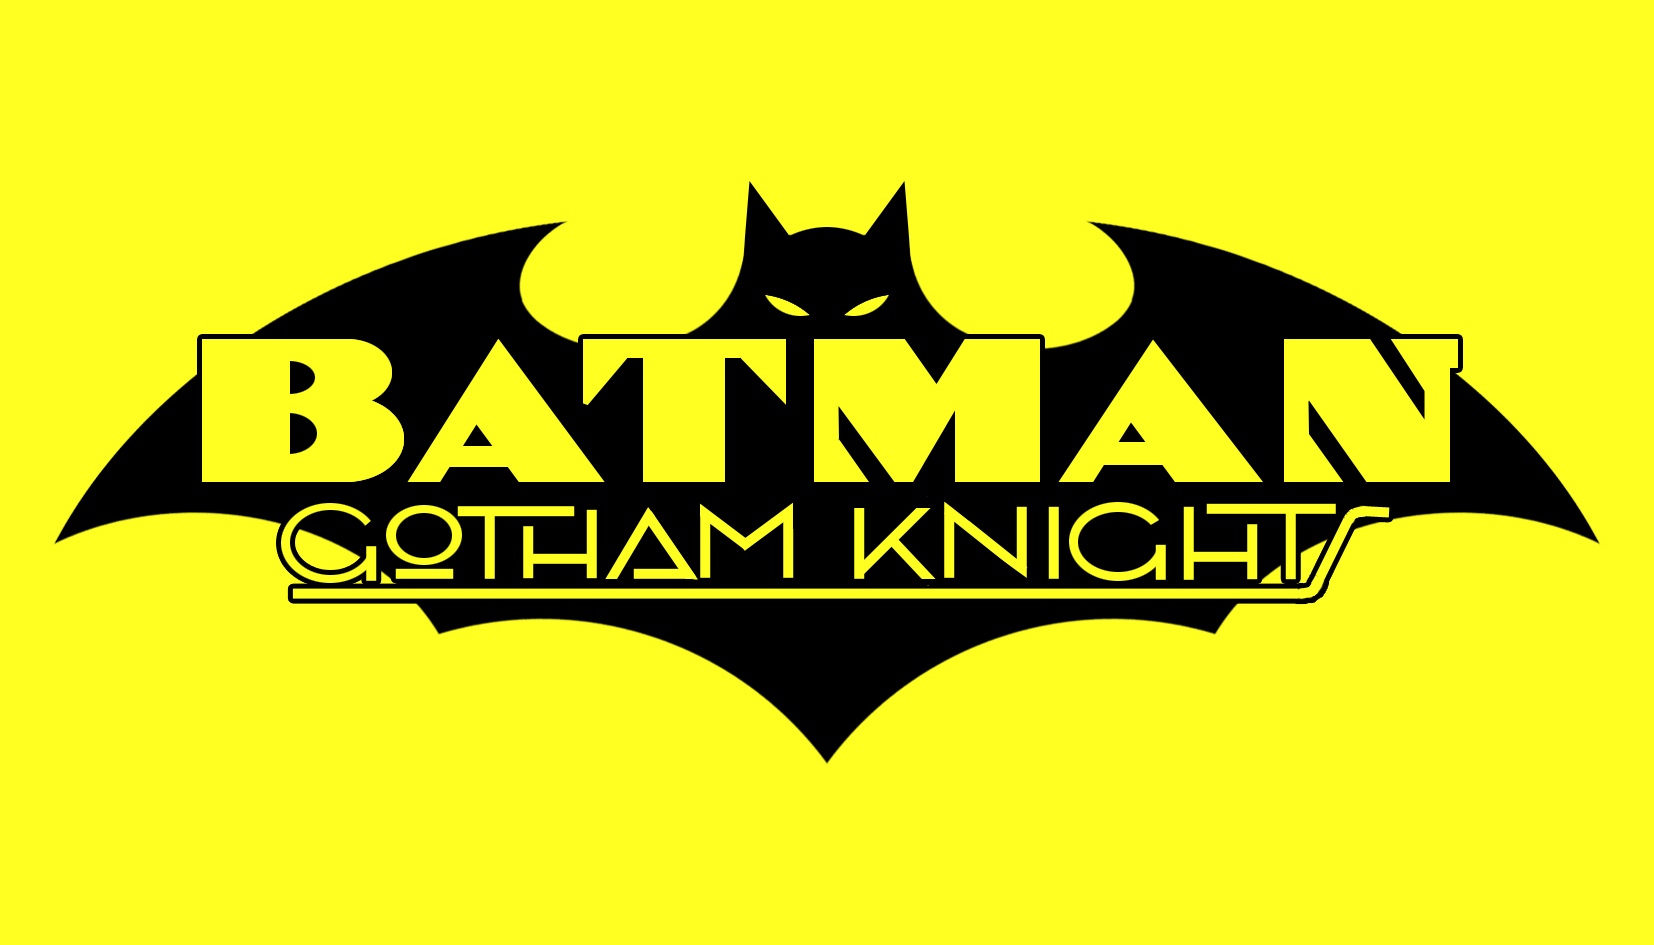 Скачать обои Бэтмен: Рыцарь Готэма на телефон бесплатно